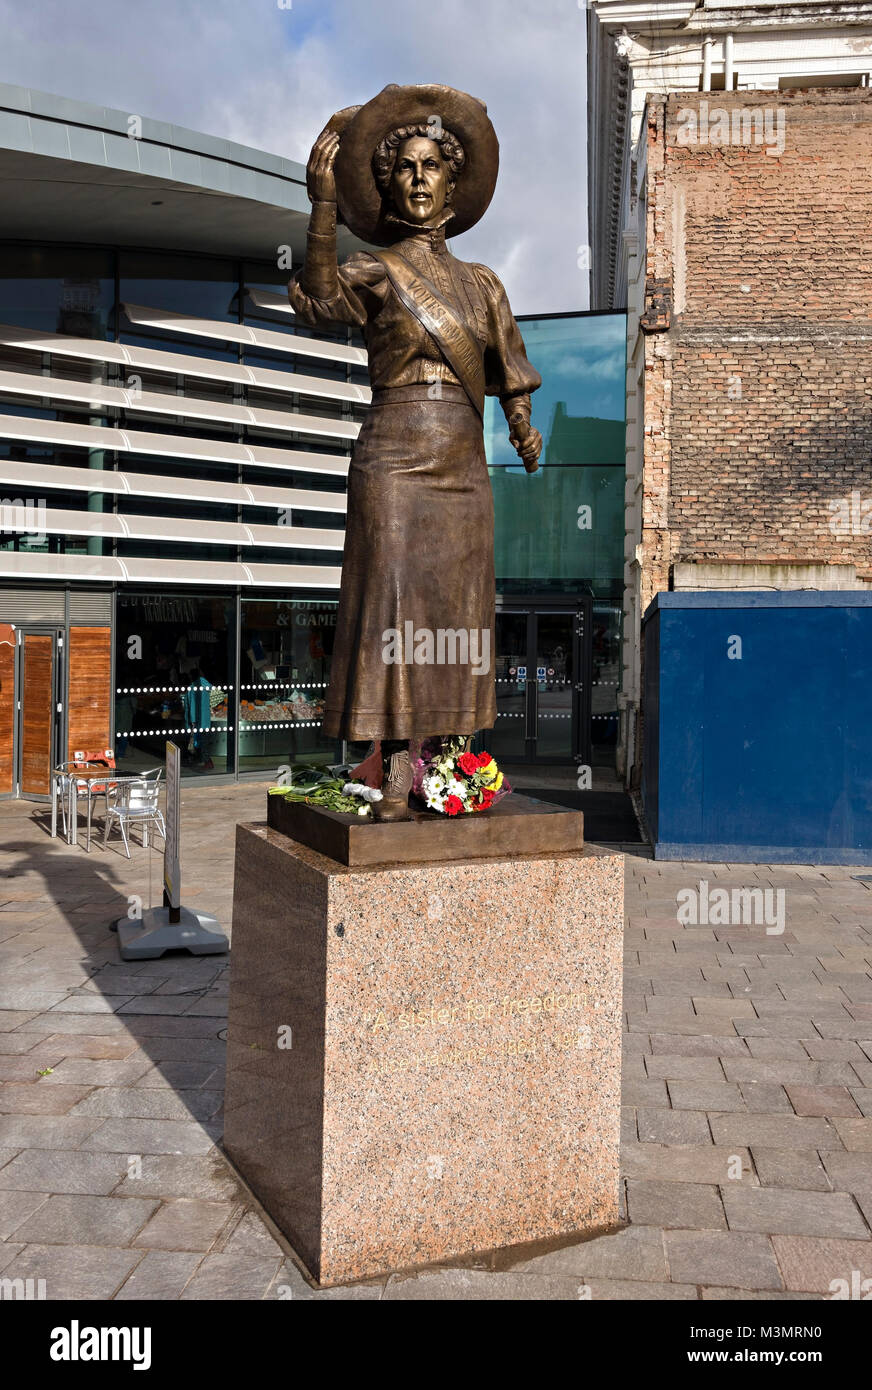 Nouvelle statue de bronze de la célèbre suffragette Alice Hawkins sur New Market Square (maintenant Green Dragon Square), Leicester, Angleterre, Royaume-Uni. Banque D'Images